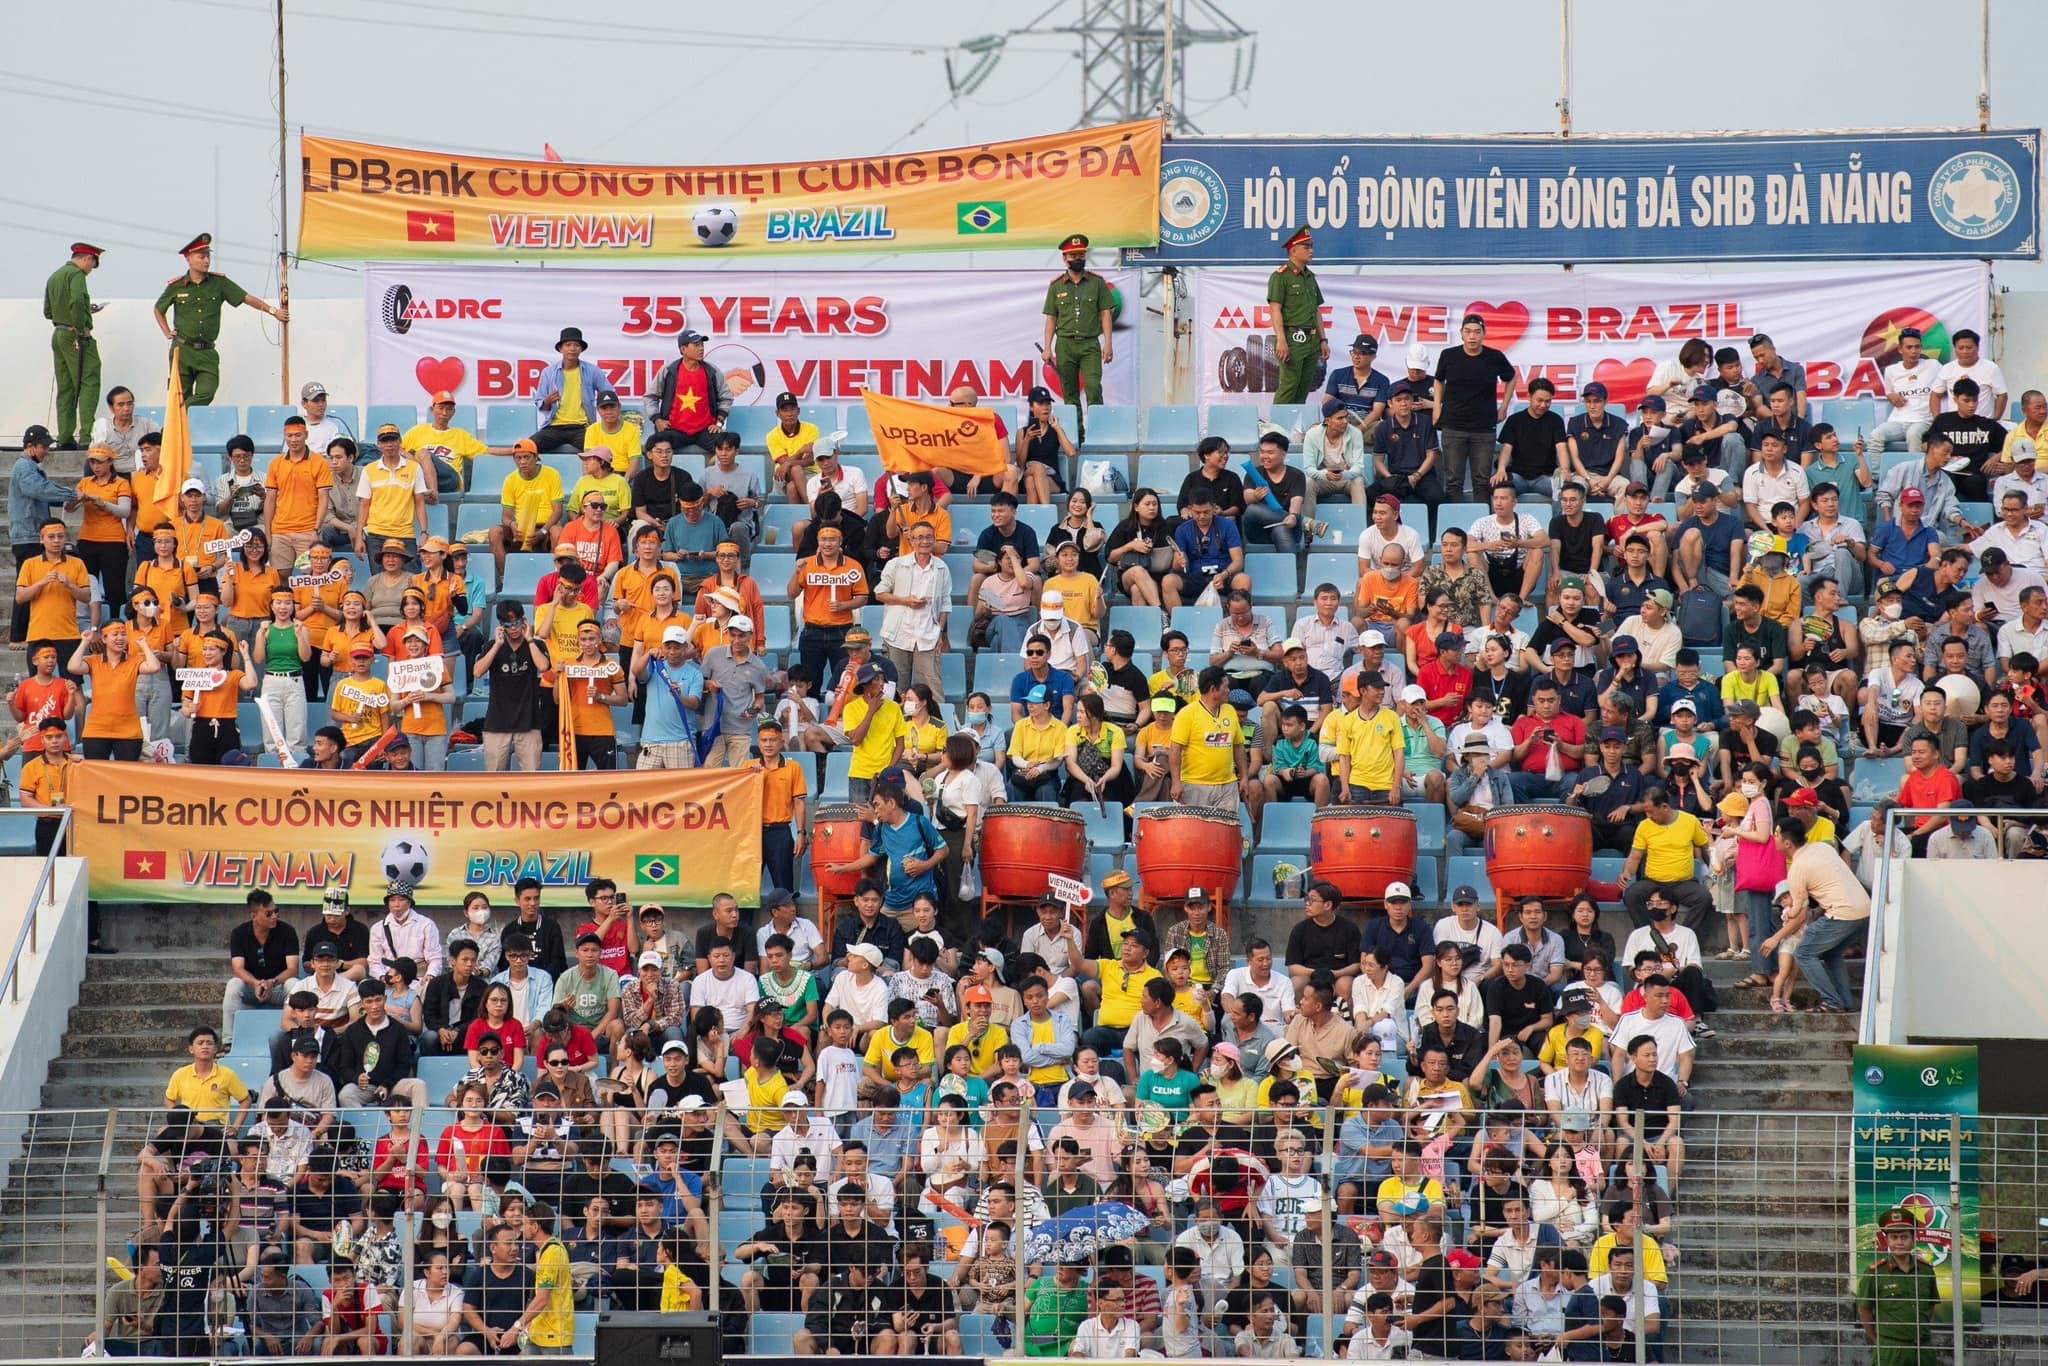 Lễ hội bóng đá Brazil - Việt Nam thu hút hàng nghìn người hâm mộ bóng đá và khách du lịch